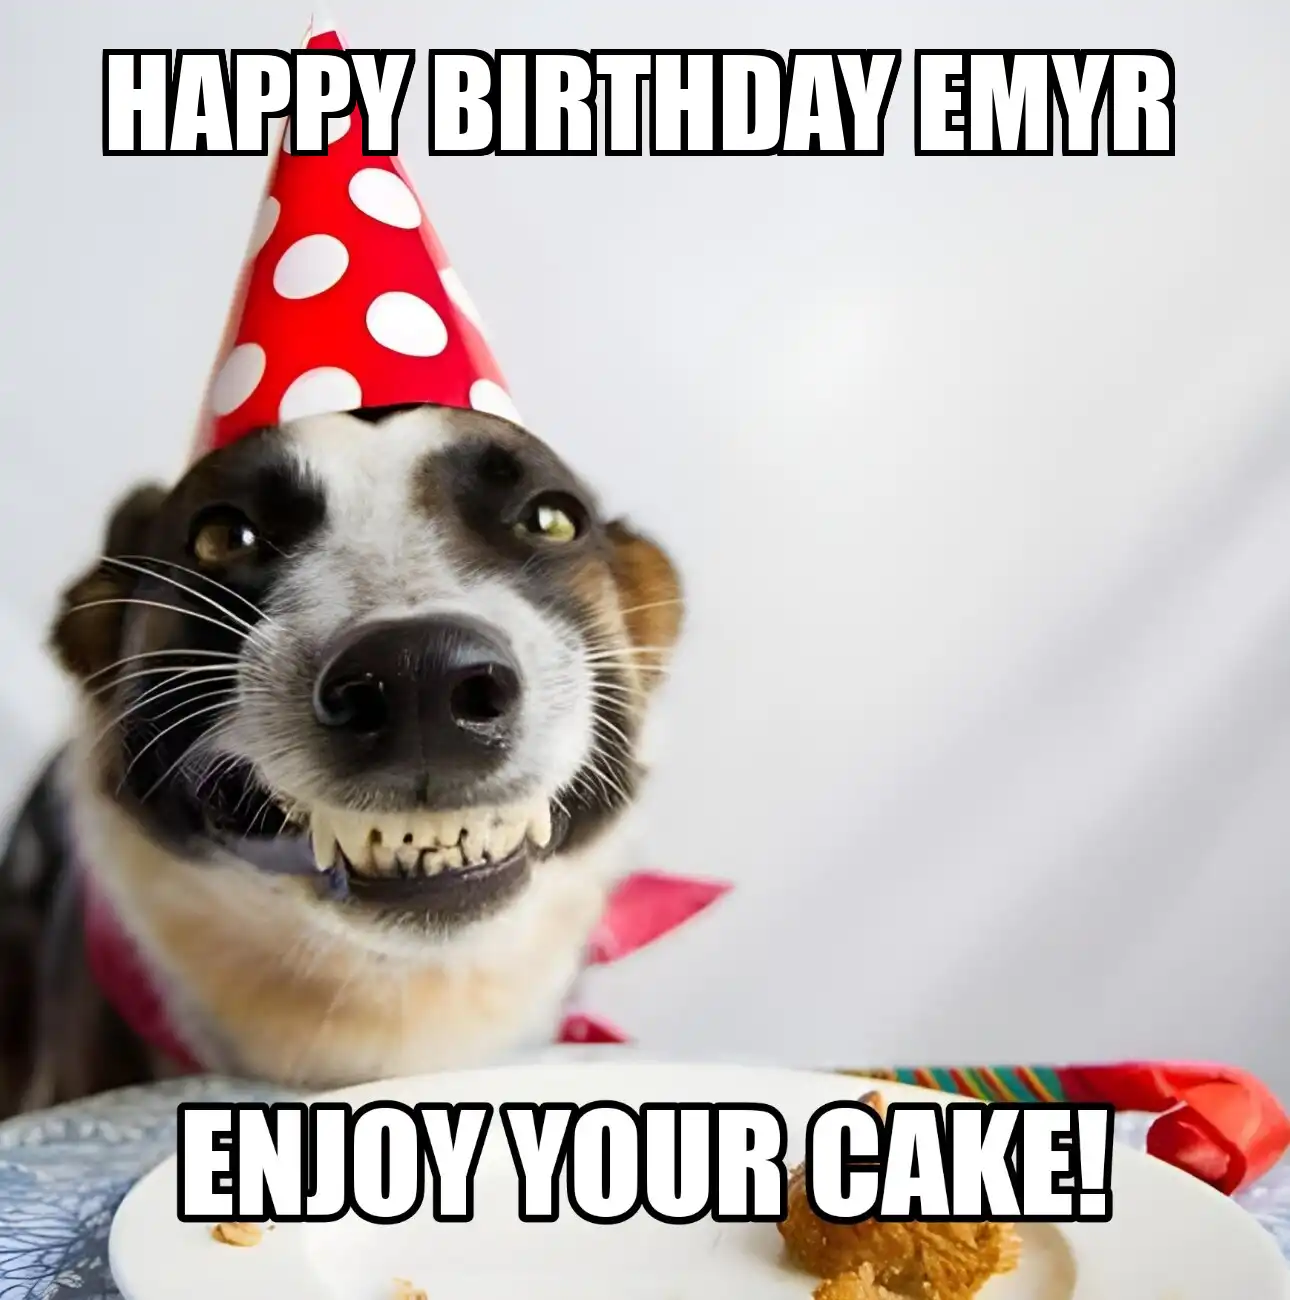 Happy Birthday Emyr Enjoy Your Cake Dog Meme